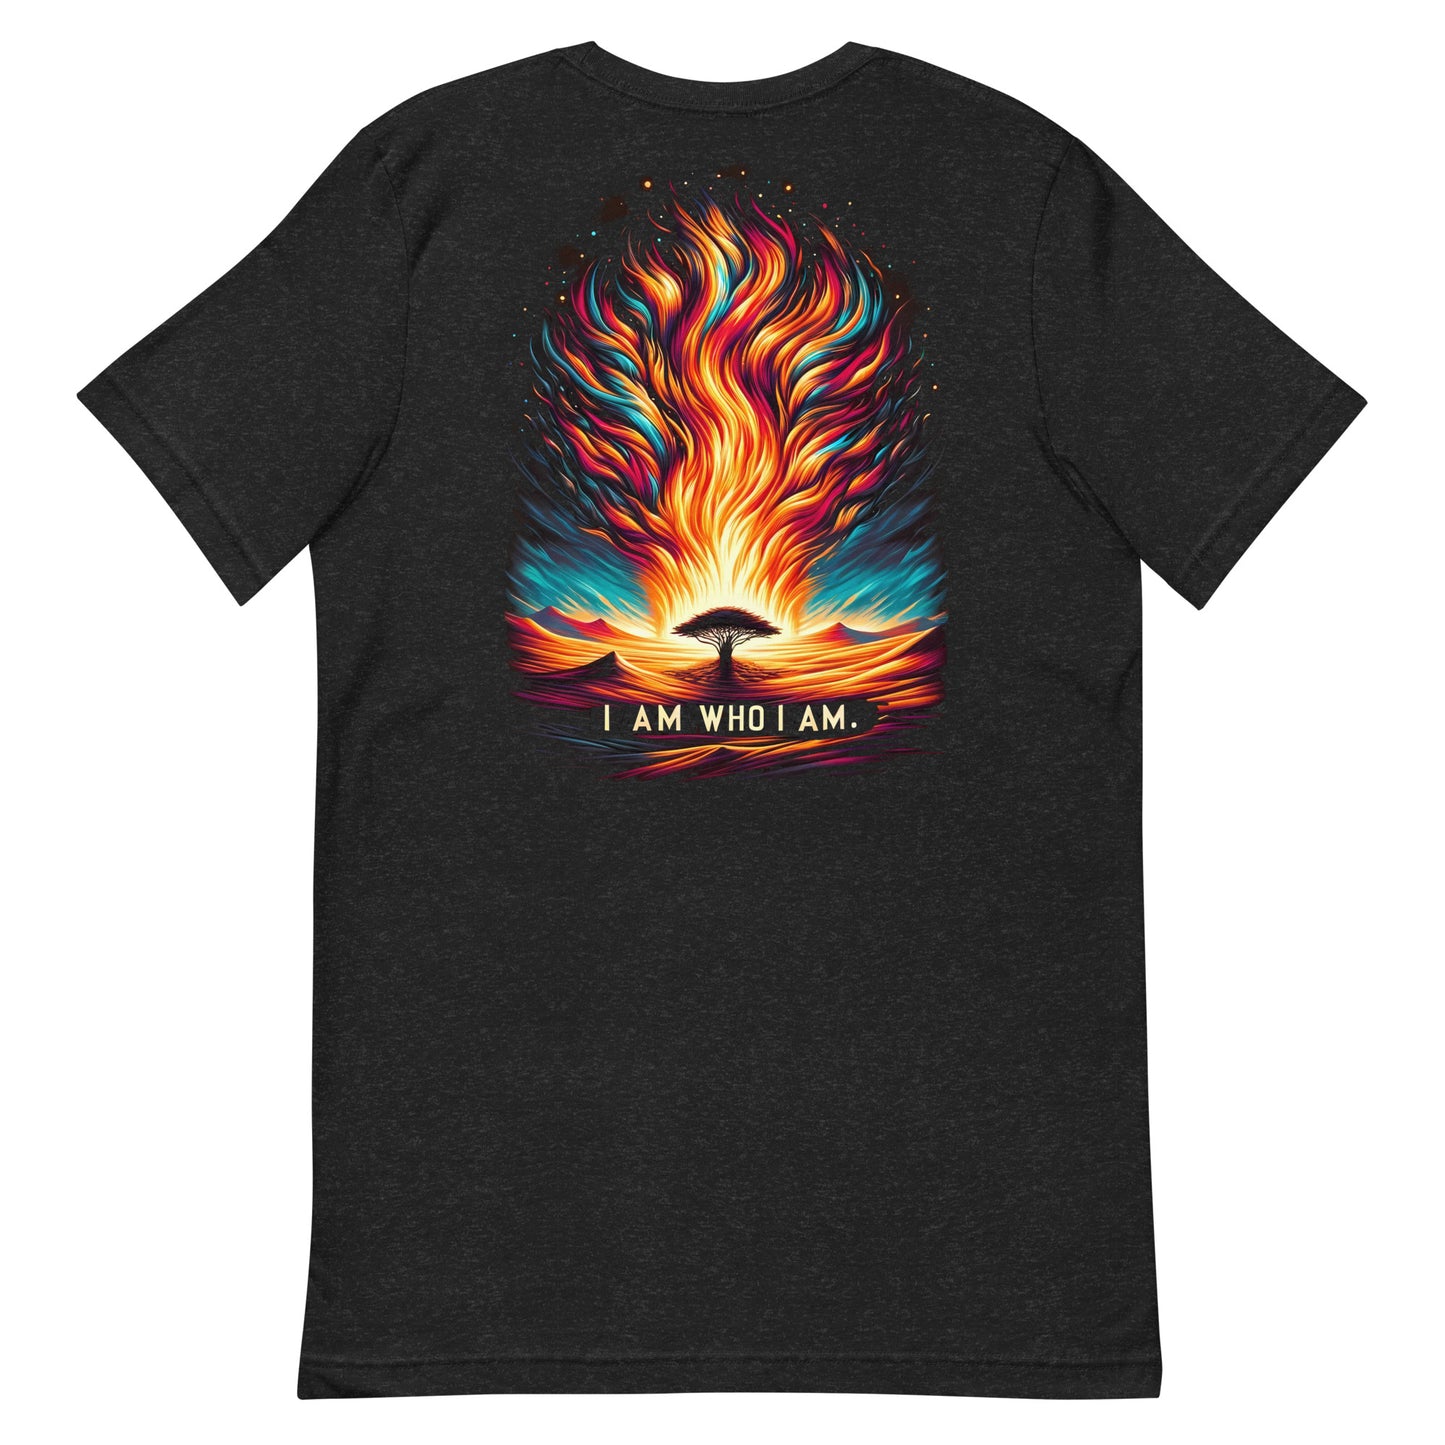 Burning Bush t-shirt